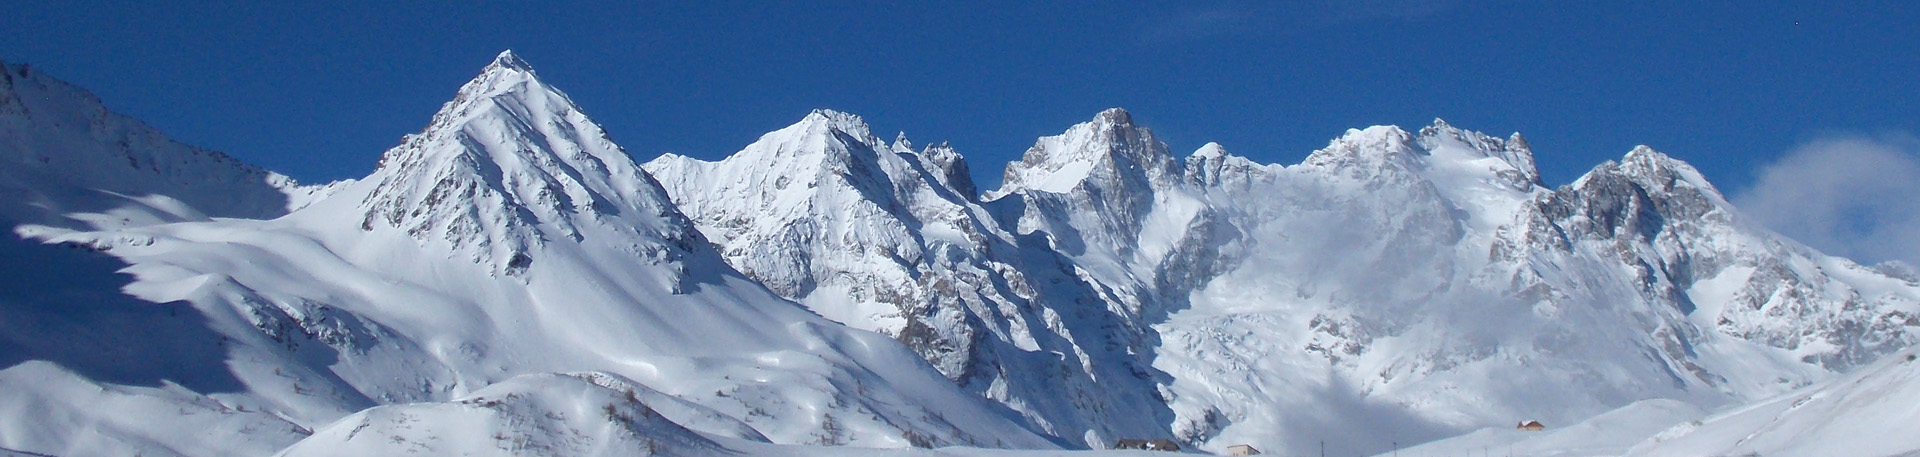 Le massif de la Meije vu du col du Lautaret